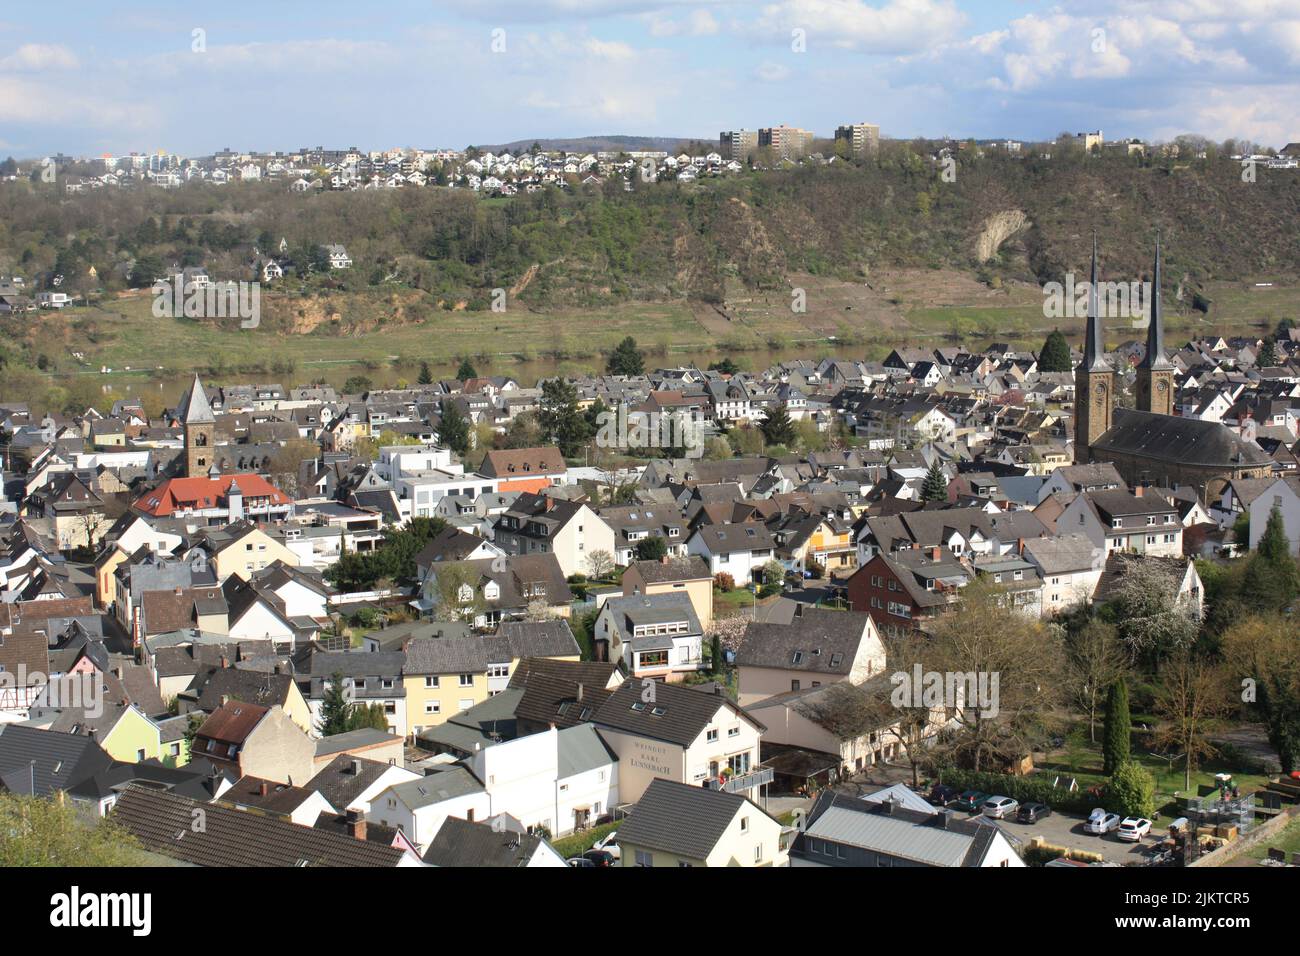 Une vue aérienne d'un quartier rural avec des maisons similaires Banque D'Images